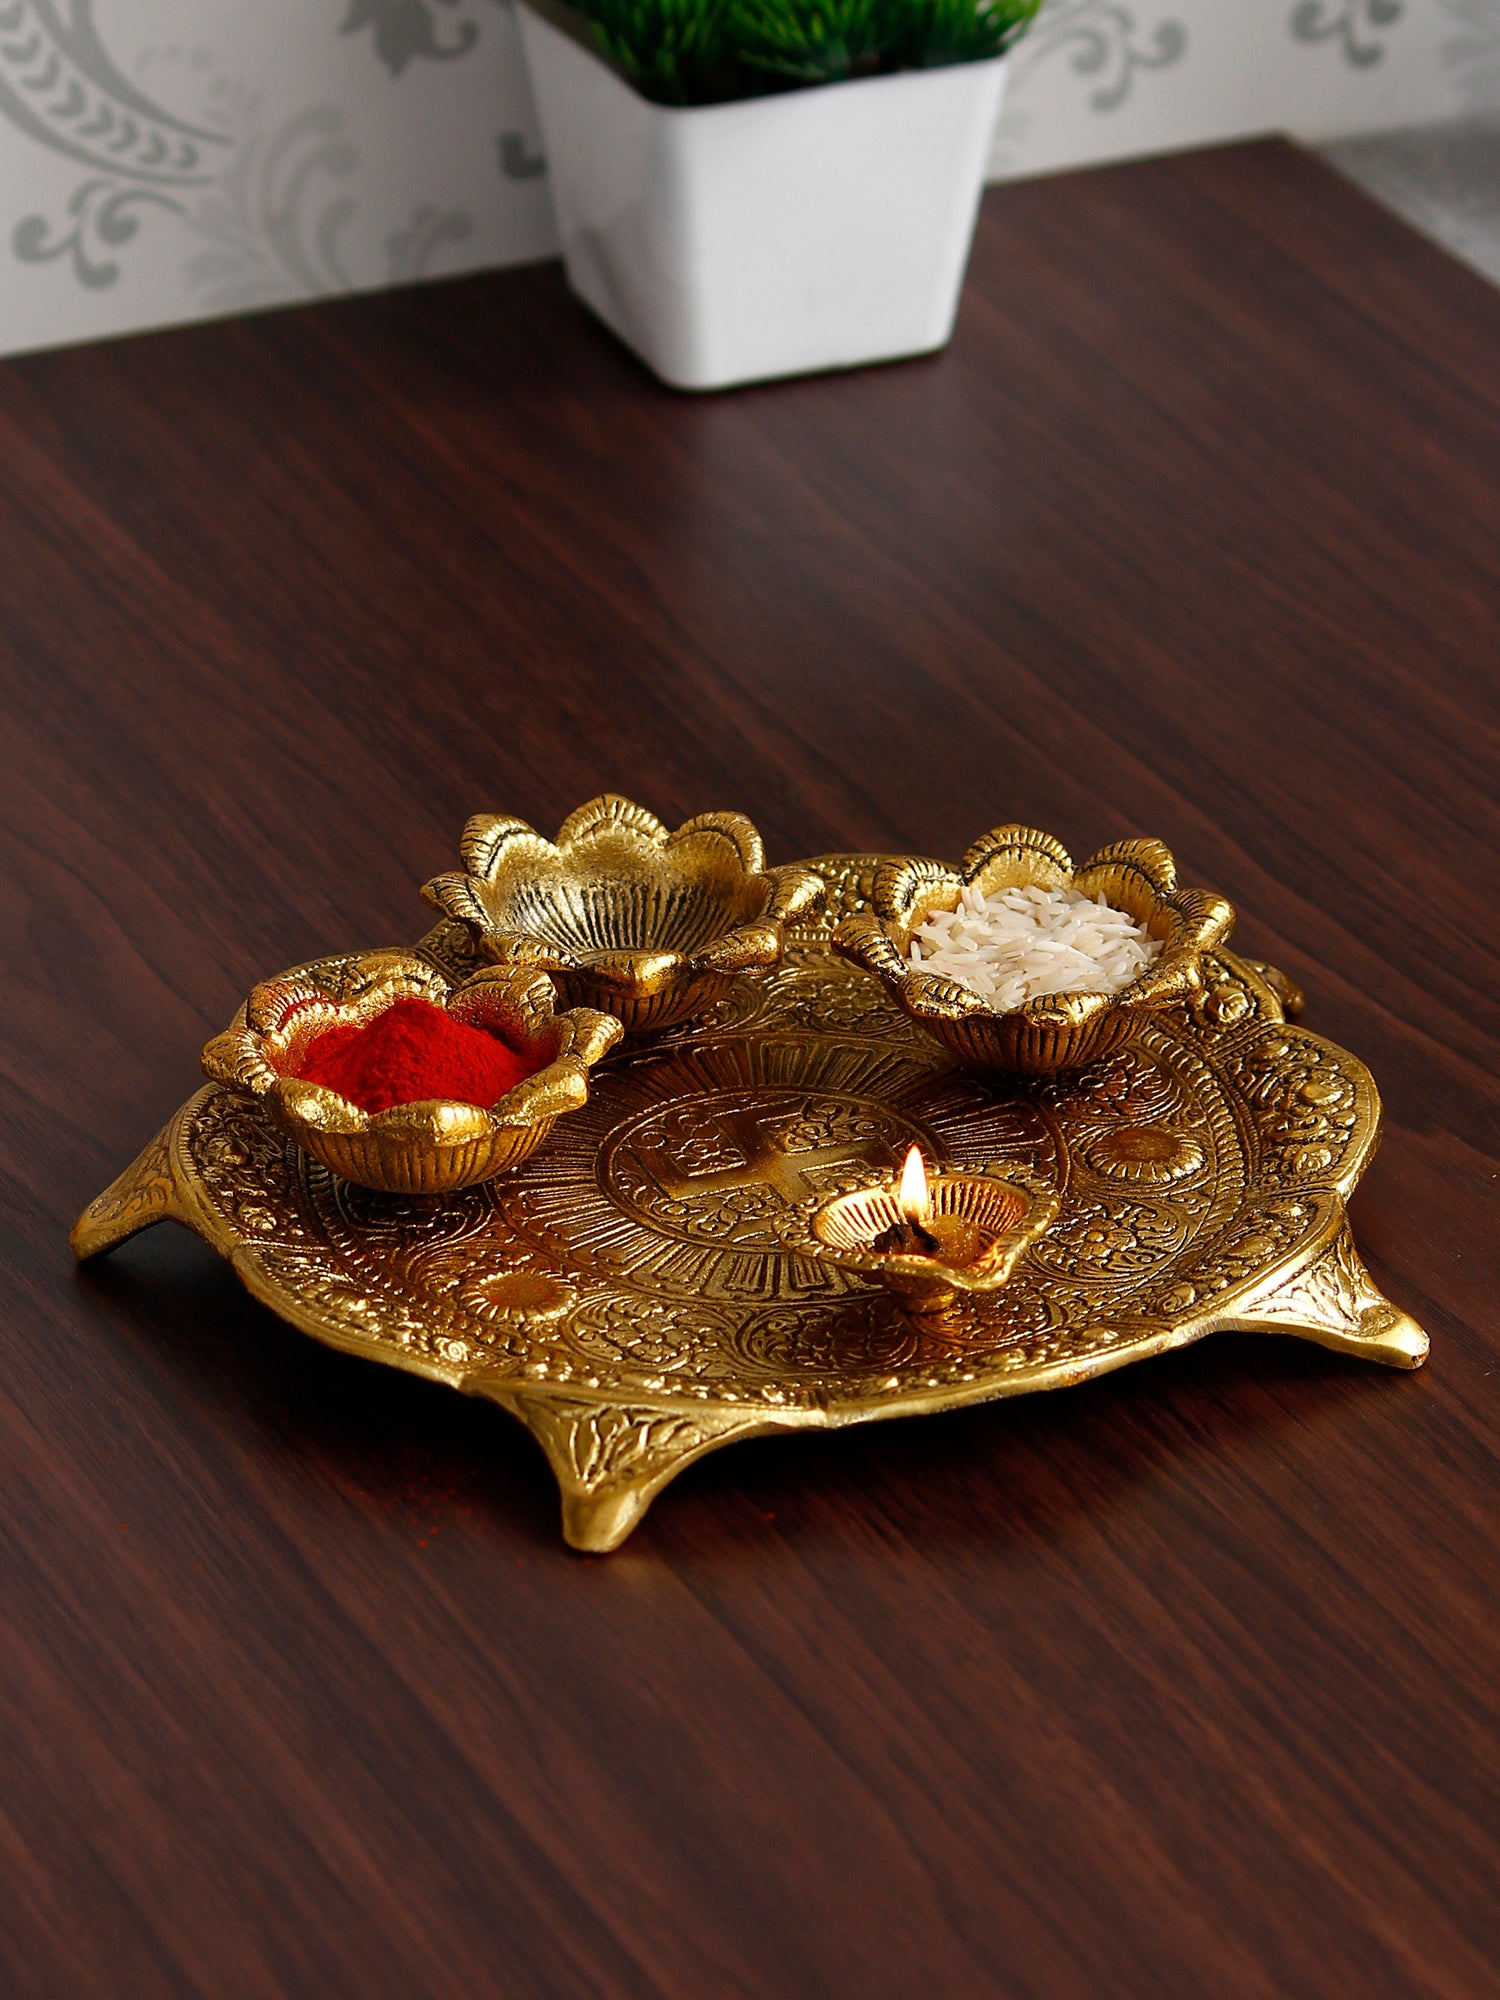 Swastik Design Golden Metal Pooja Thali with 3 Bowls and 1 Diya